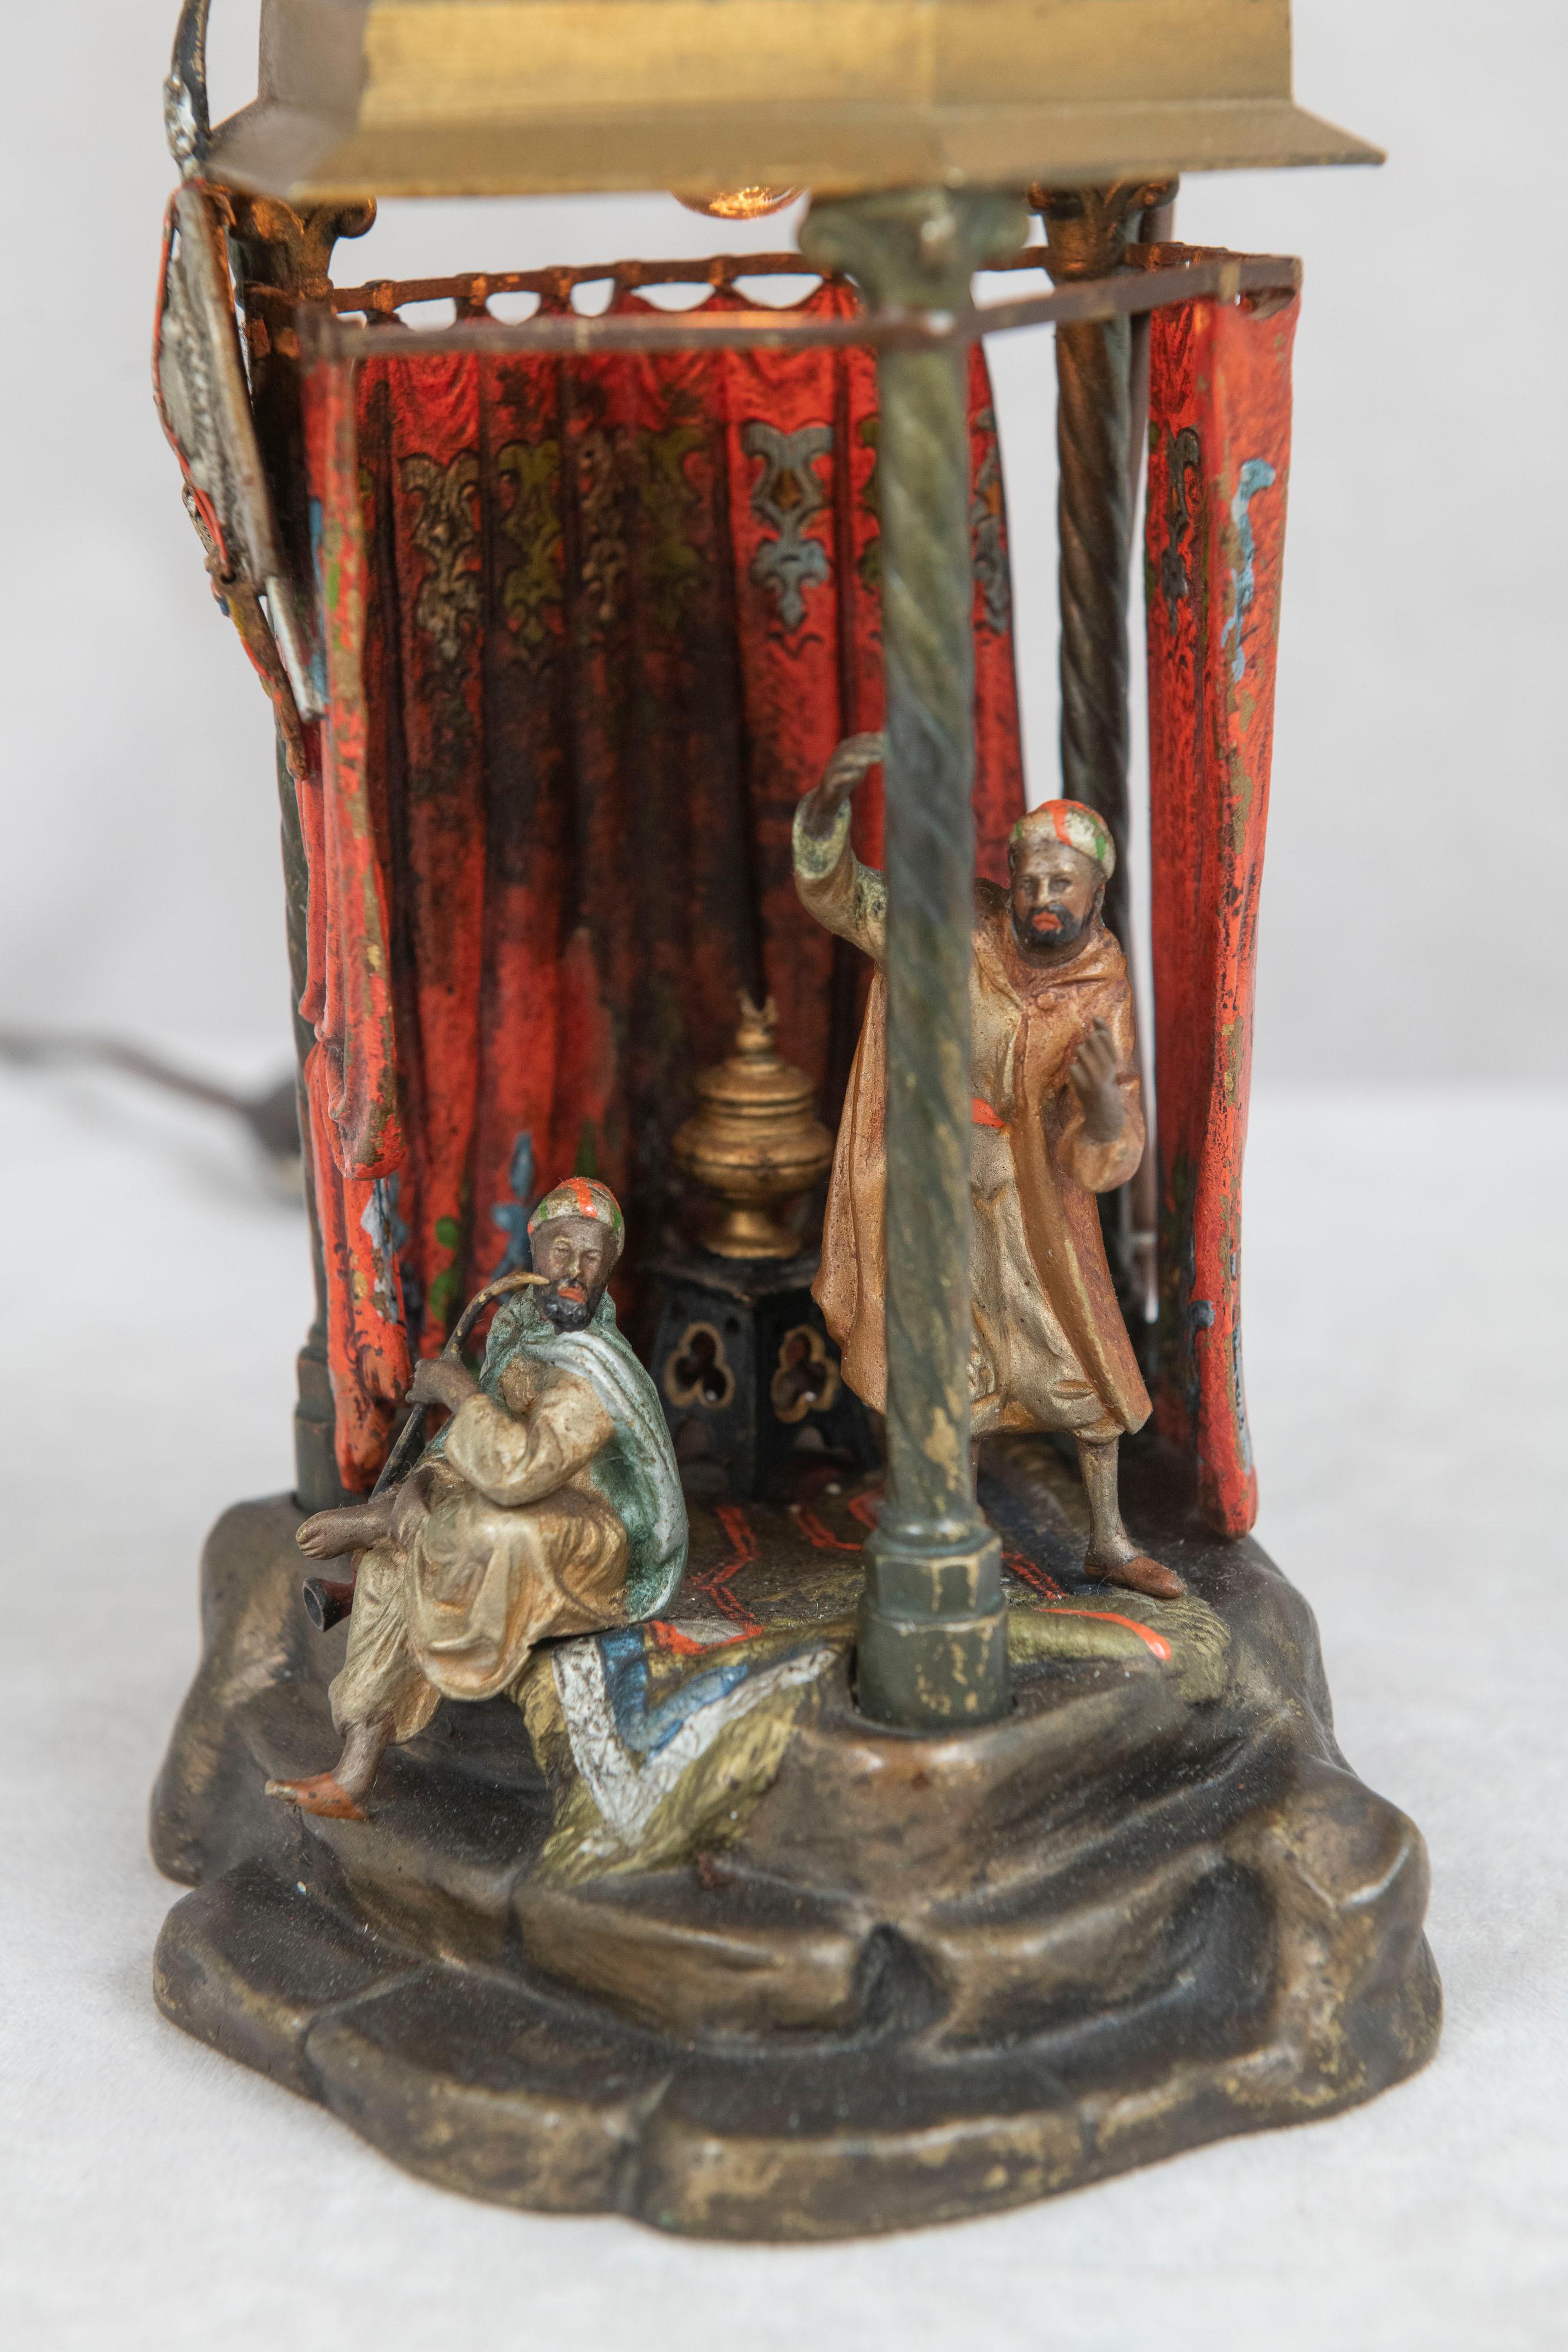 Mauresque Lampe autrichienne orientaliste en bronze peint à froid avec 2 personnages à l'intérieur d'une petite pièce